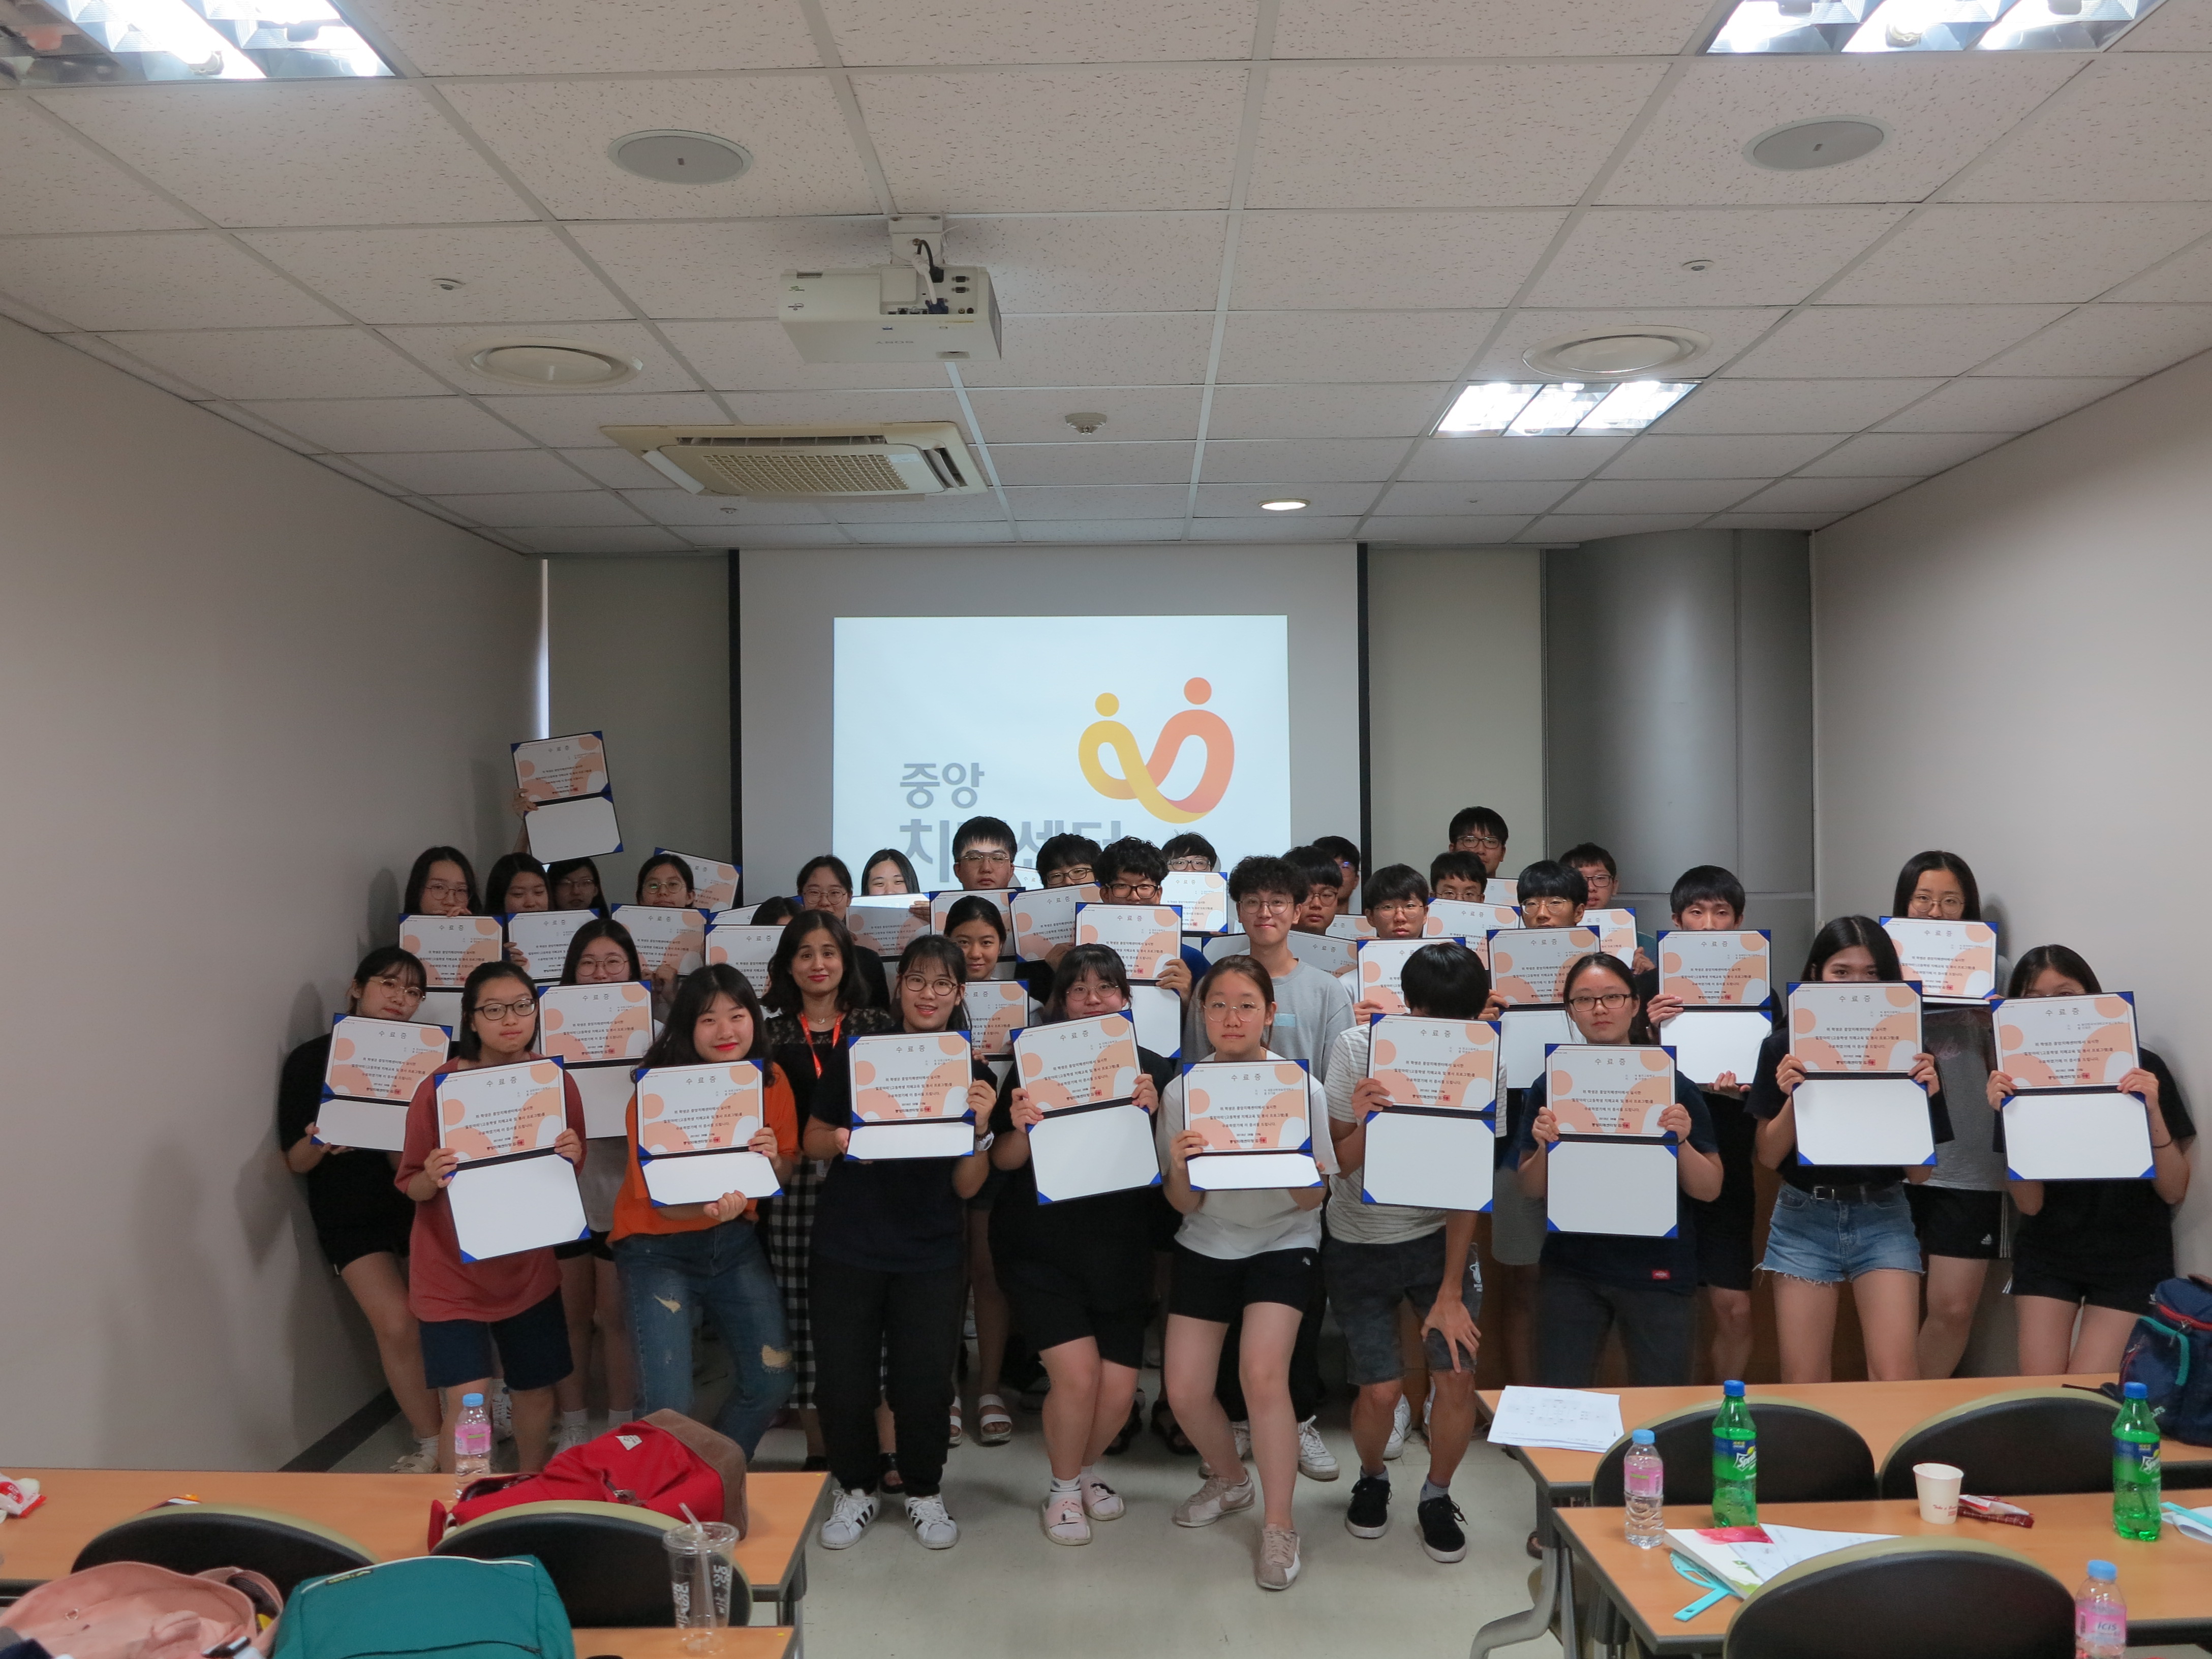 2018년 여름방학 고등학생 치매인식개선 캠페인 <힐링아띠>